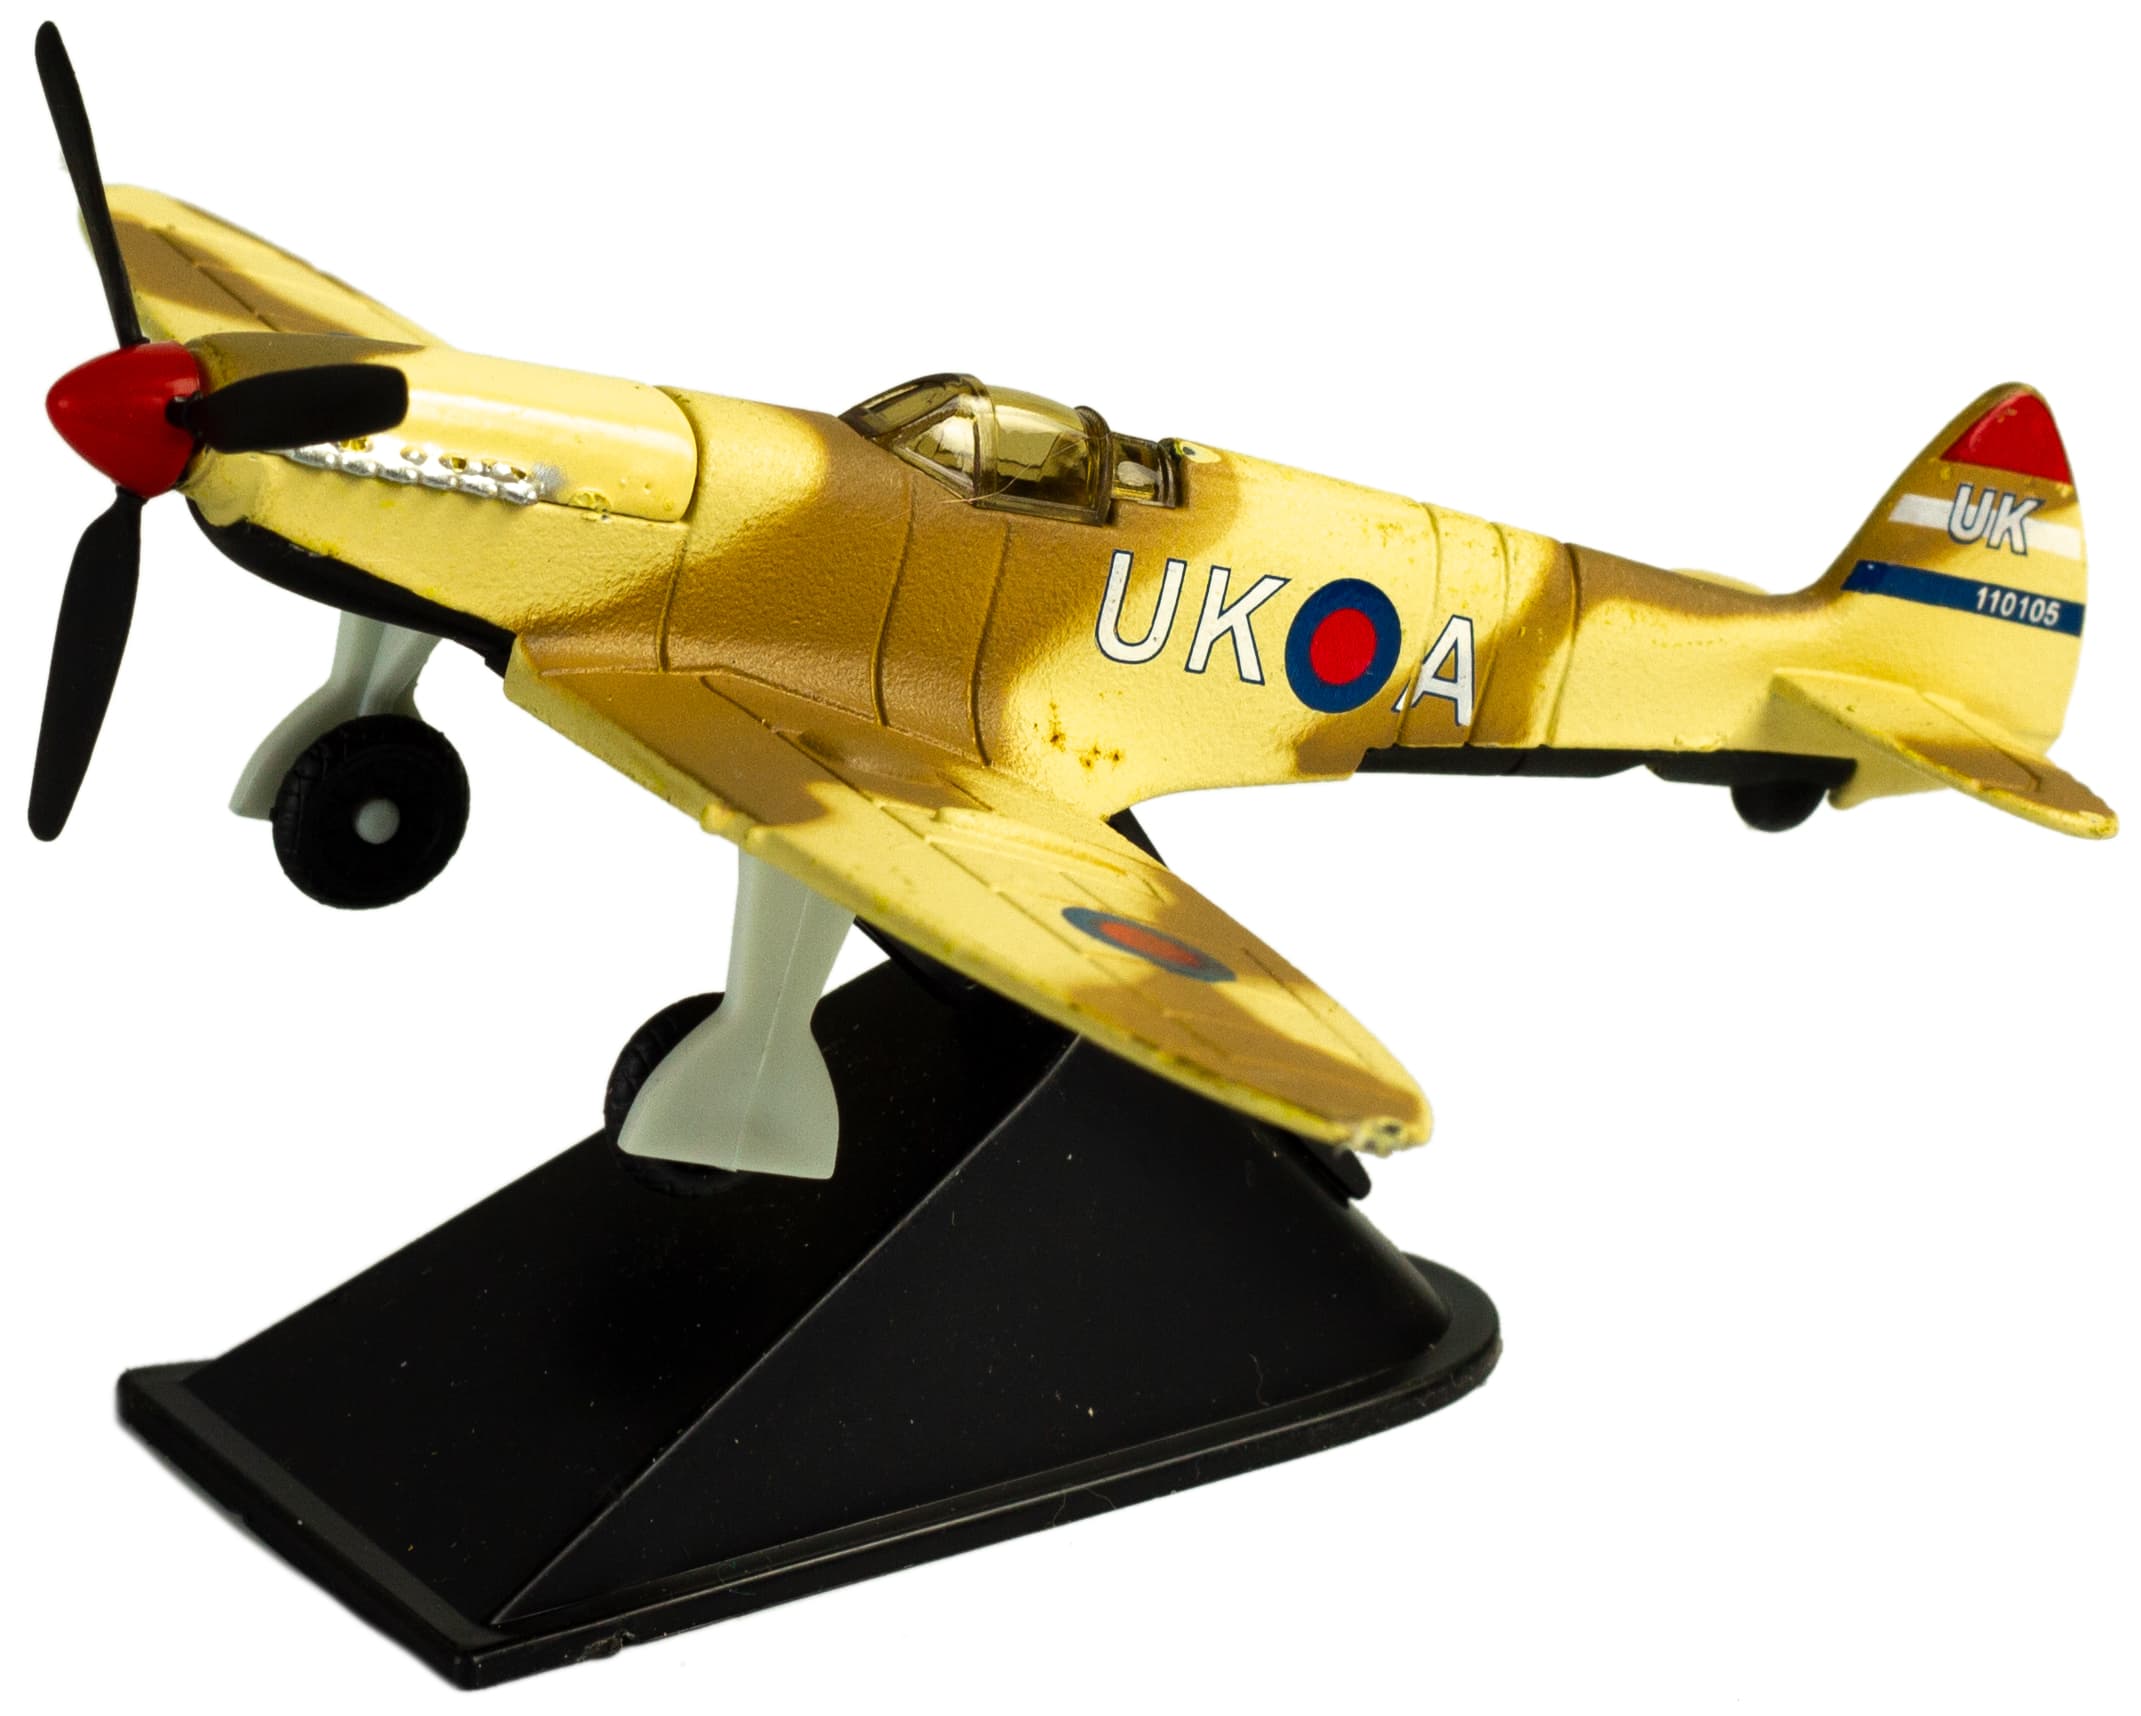 Металлическая модель военного самолета-истребителя «Classic Fighter. UK» 10 см. F8211012B, винтовой, на подставке / Желтый